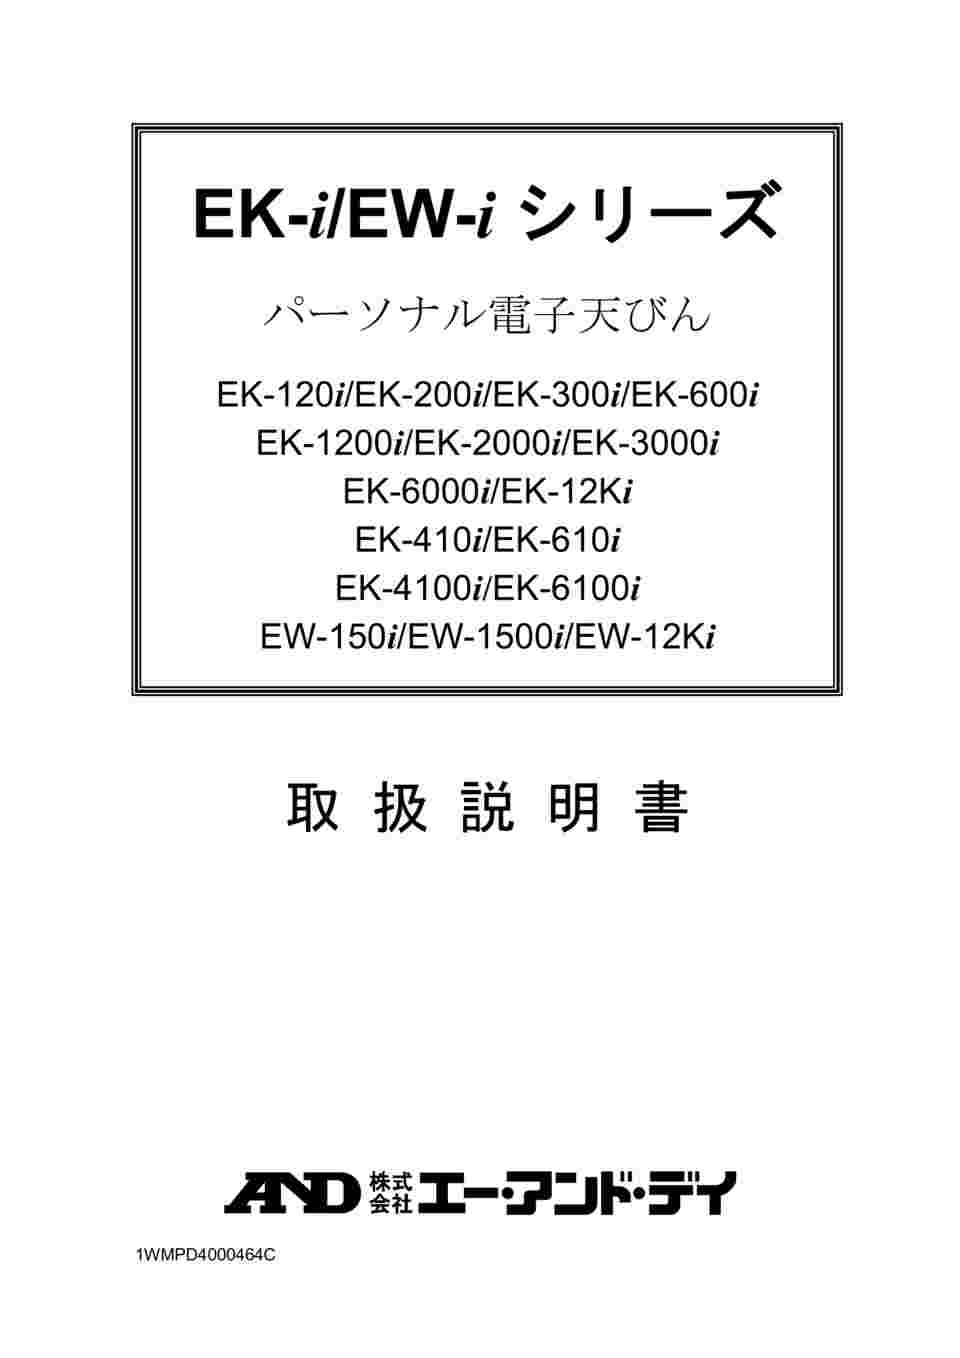 1-6842-03-20 パーソナル電子天秤 校正証明書付 EW-12Ki 【AXEL】 アズワン